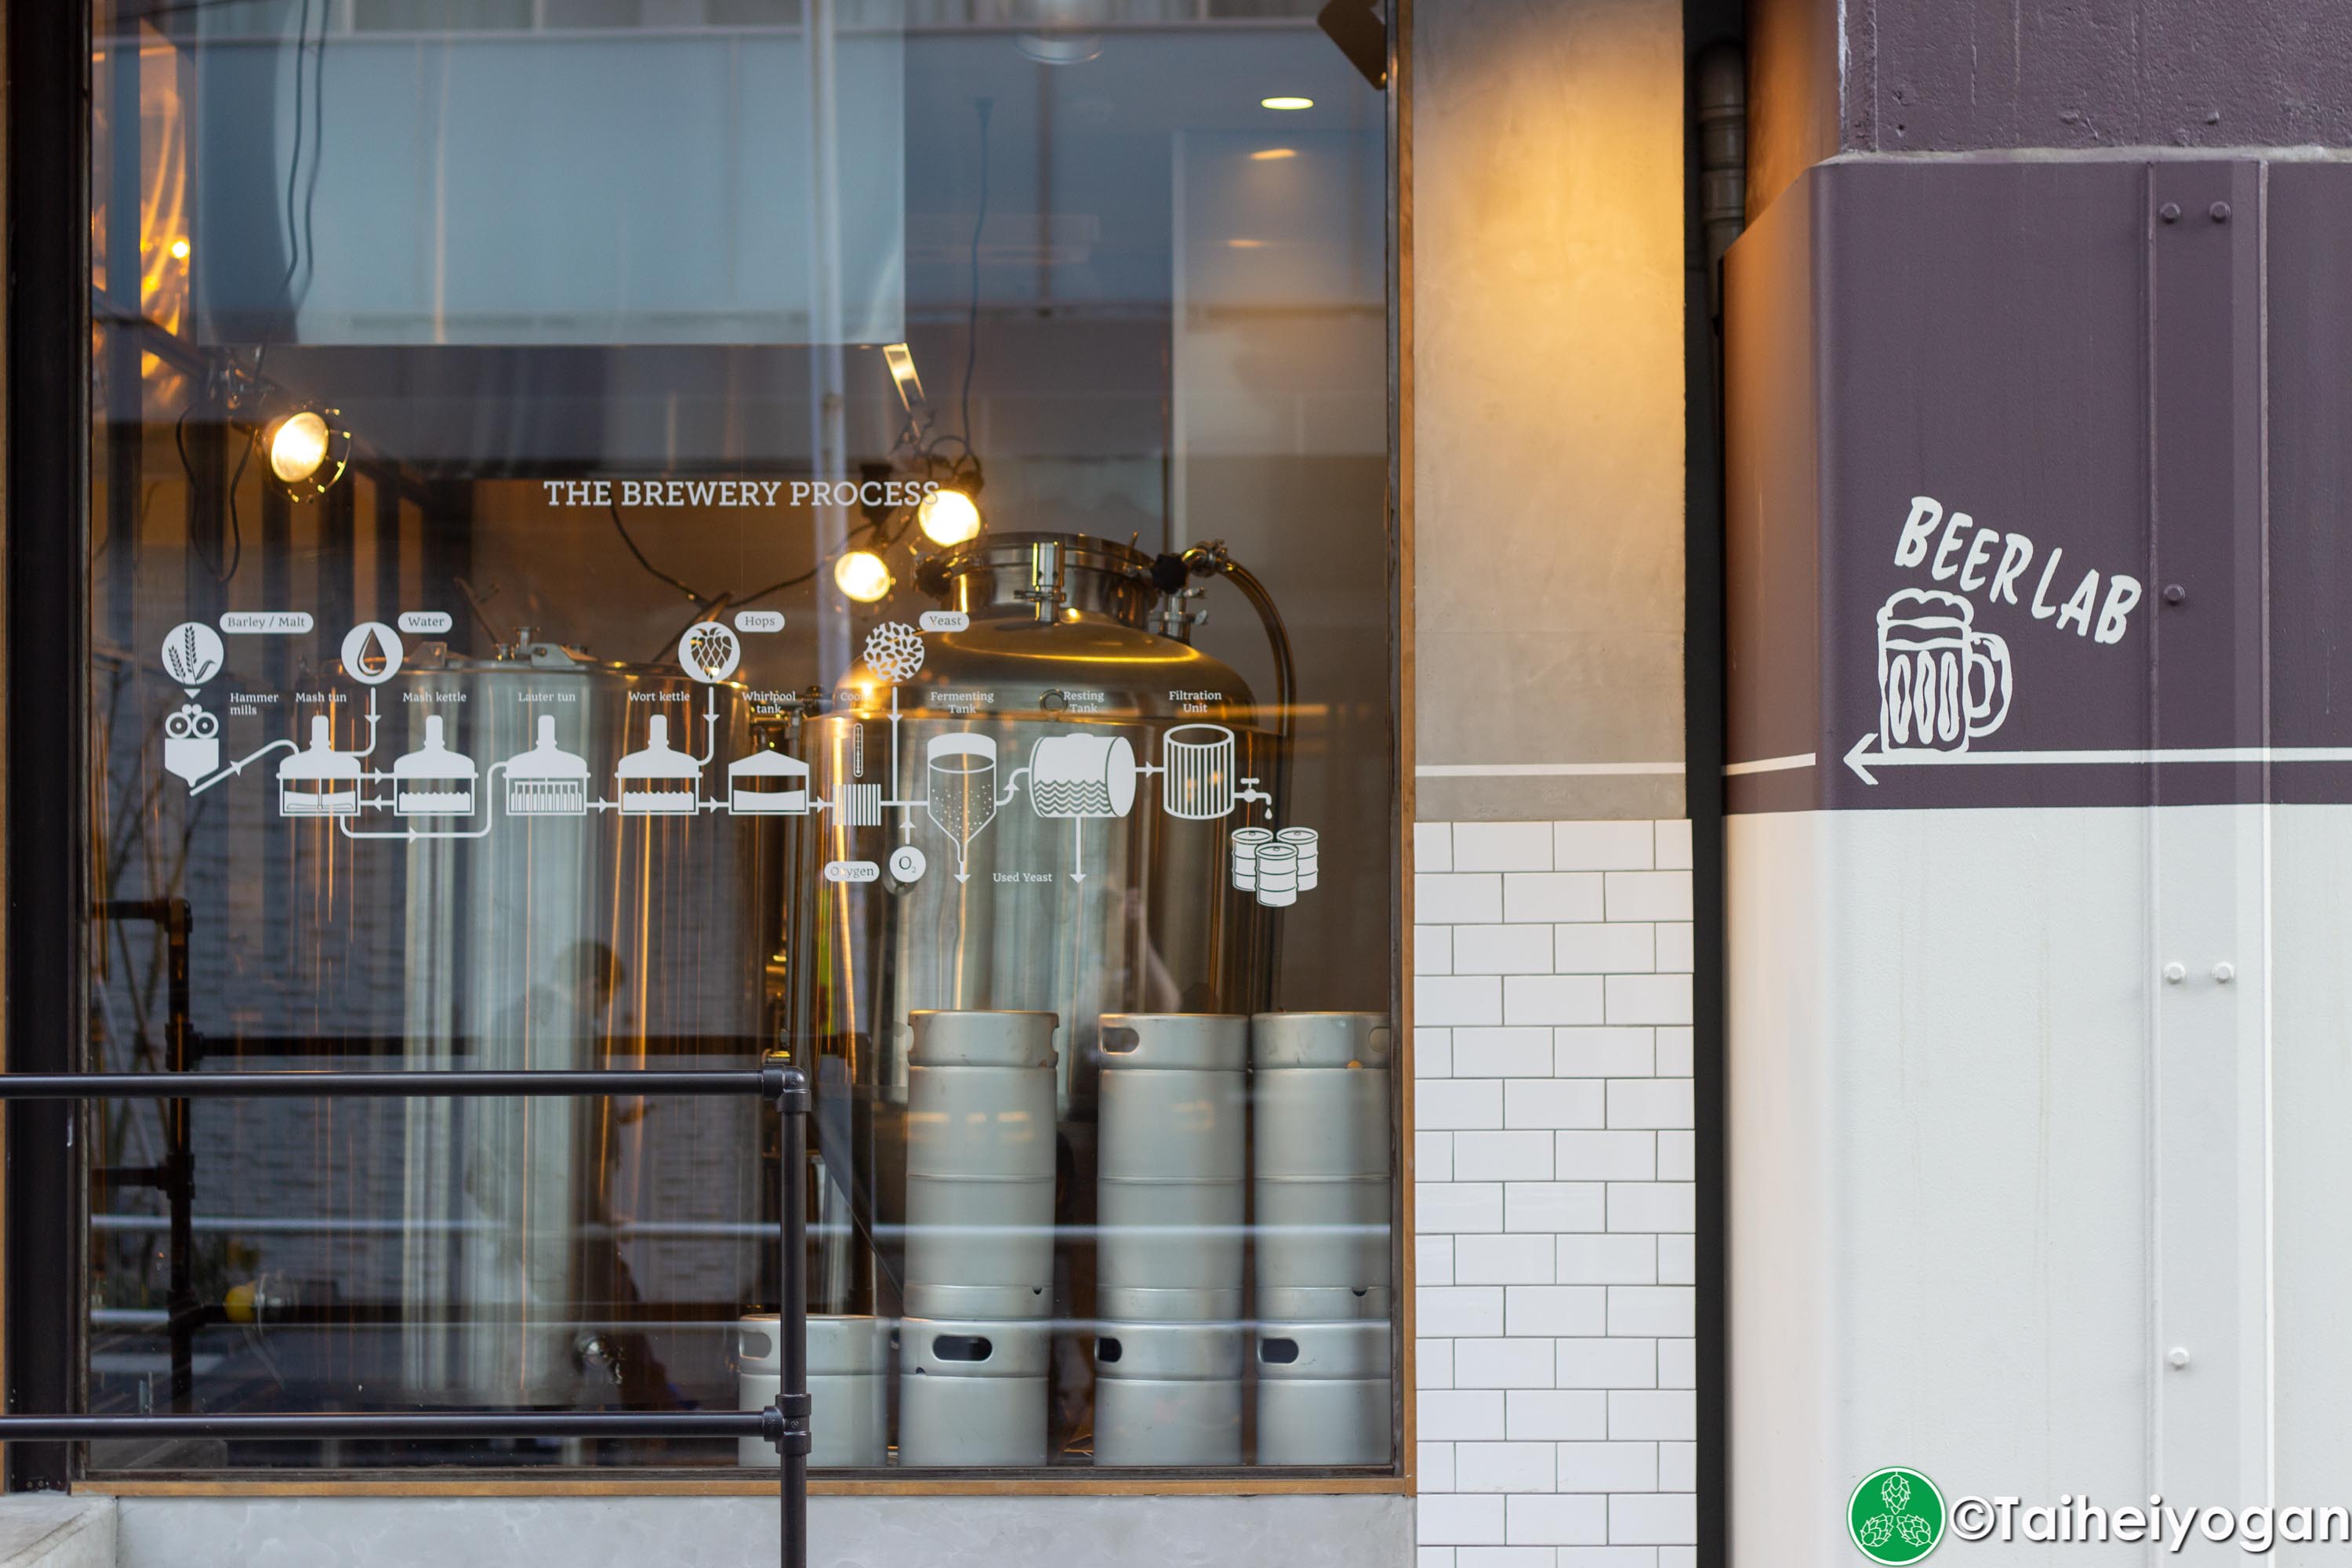 Tokyo Butchers & Okachi Beer Lab